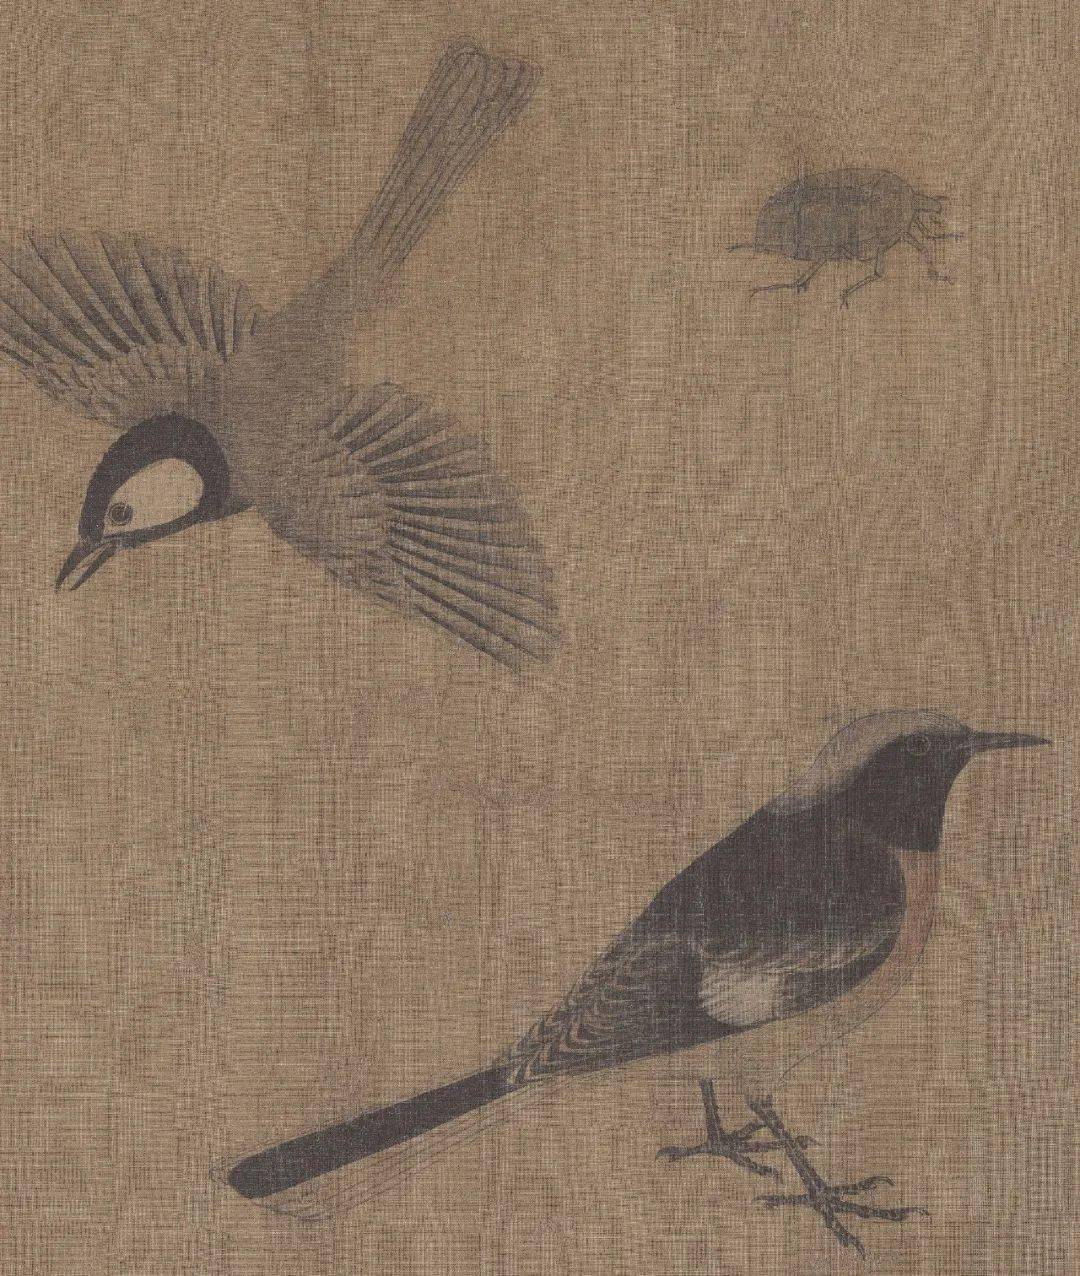 黄筌,深刻影响了宋代花鸟画的五代西蜀画家